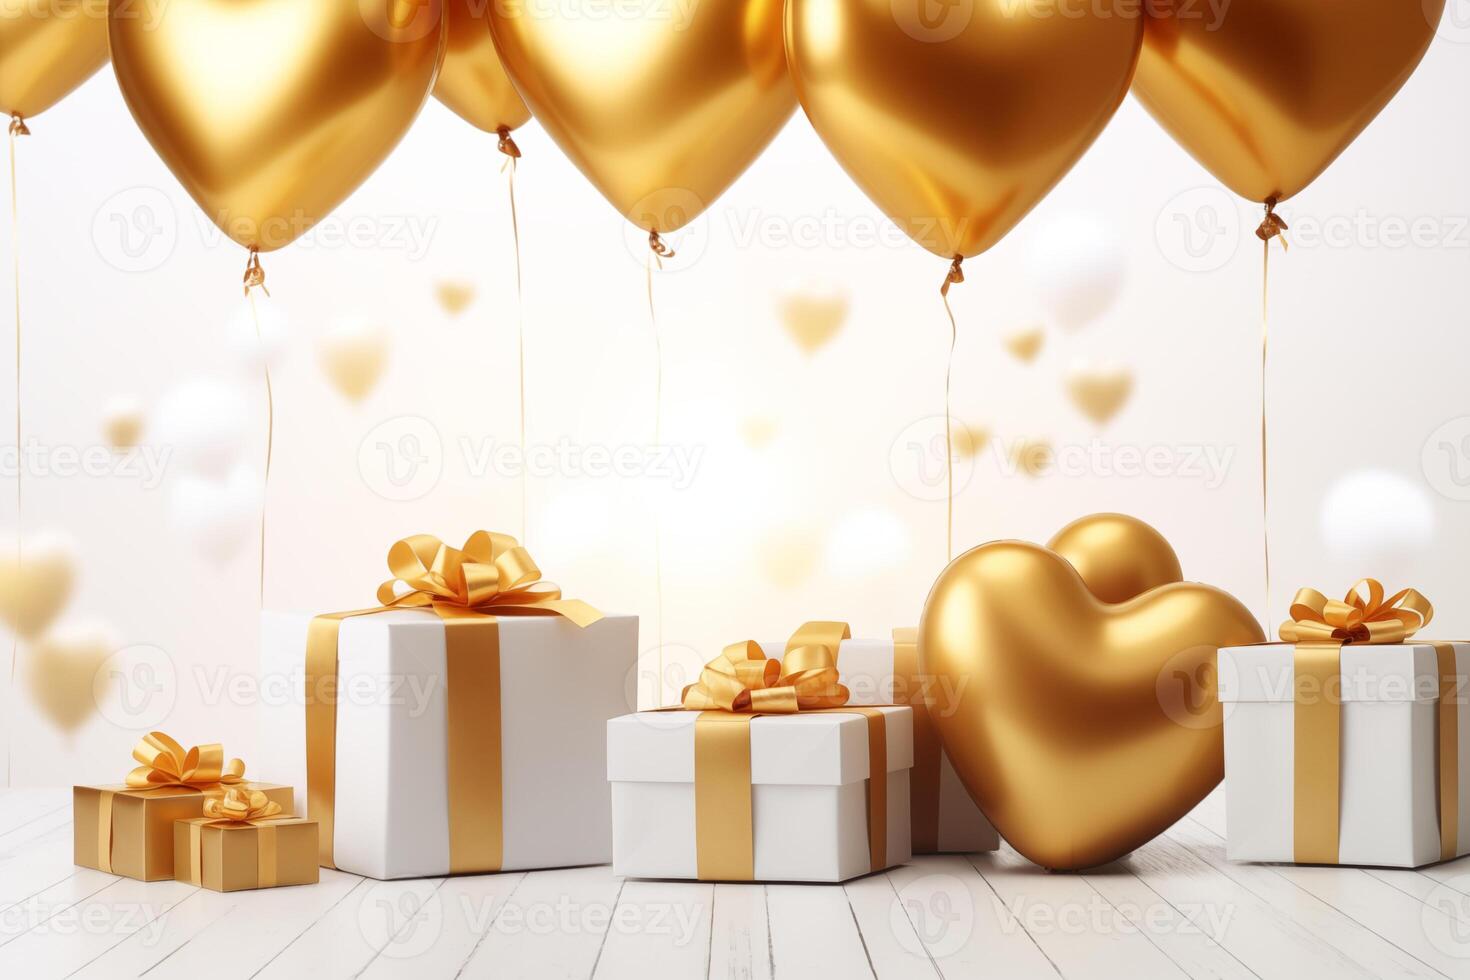 Lycklig hjärtans dag kärlek eller födelsedag firande Semester bakgrund baner illustration hälsning kort - guld hjärta ballonger och guld vit gåva lådor på tabell foto